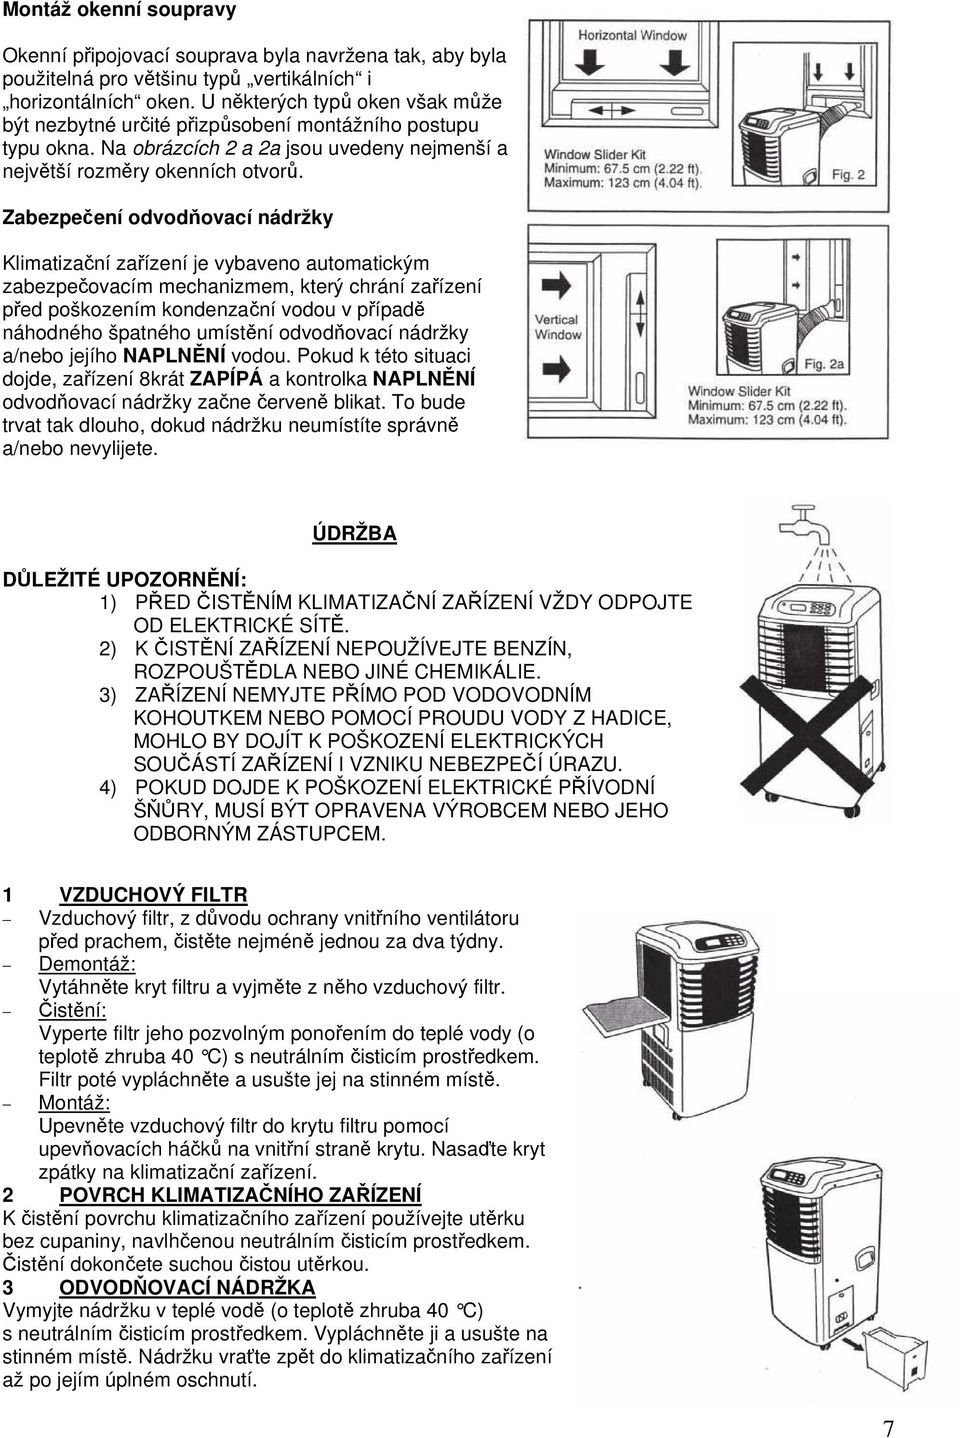 Zabezpečení odvodňovací nádržky Klimatizační zařízení je vybaveno automatickým zabezpečovacím mechanizmem, který chrání zařízení před poškozením kondenzační vodou v případě náhodného špatného